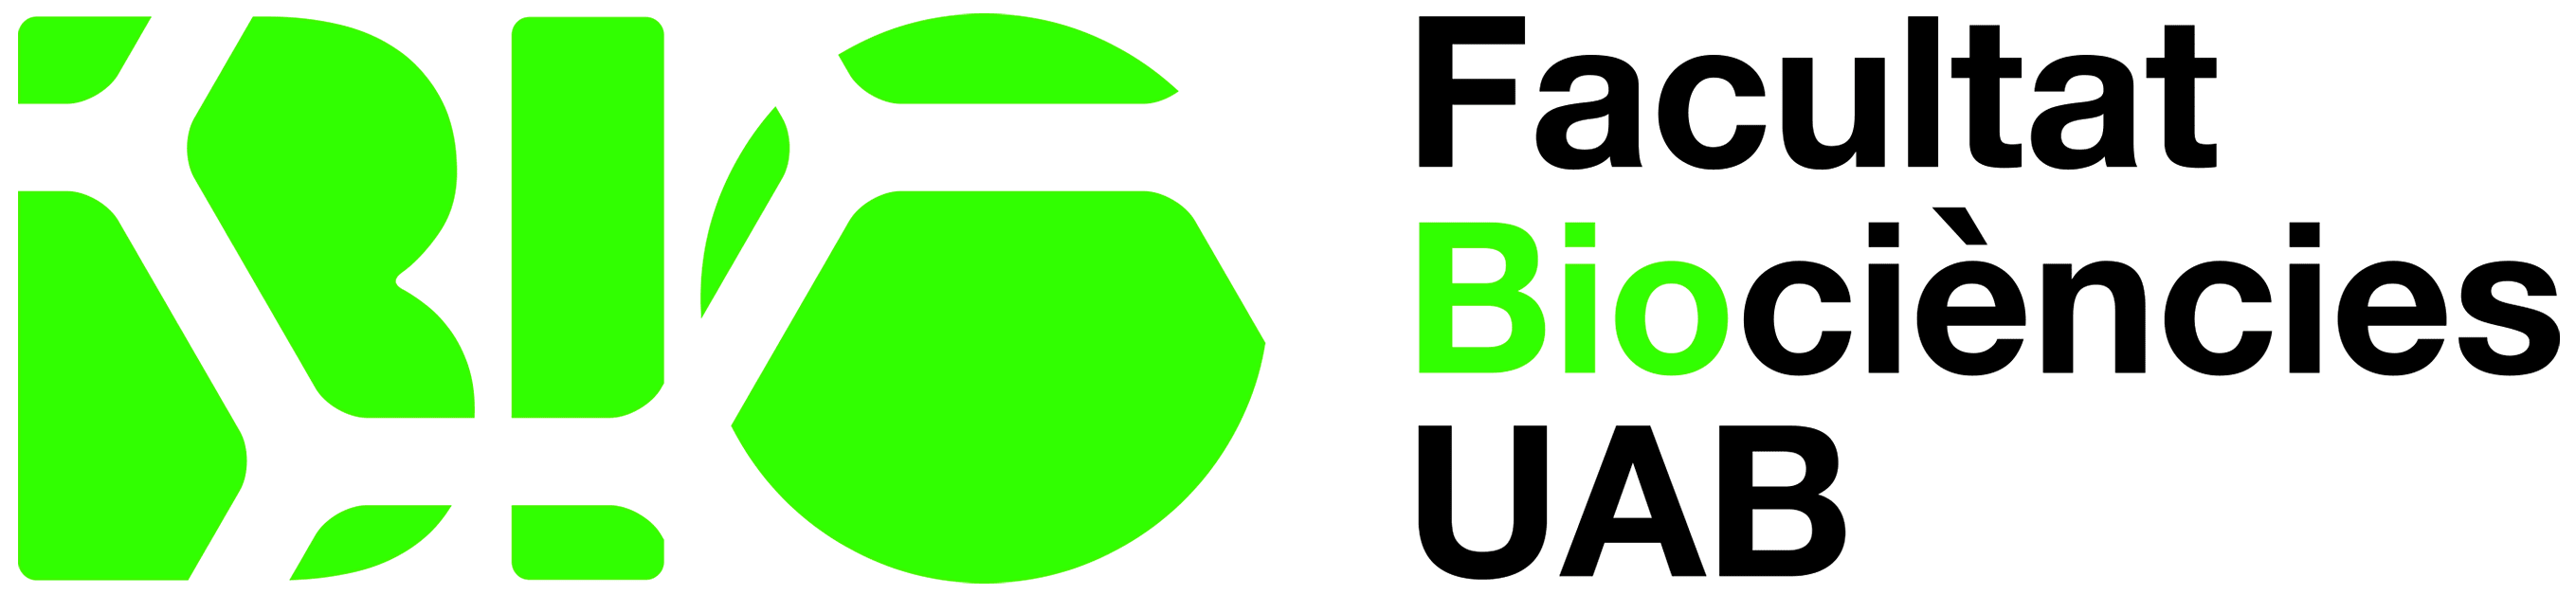 Logotip Facultat de Biociències de la UAB